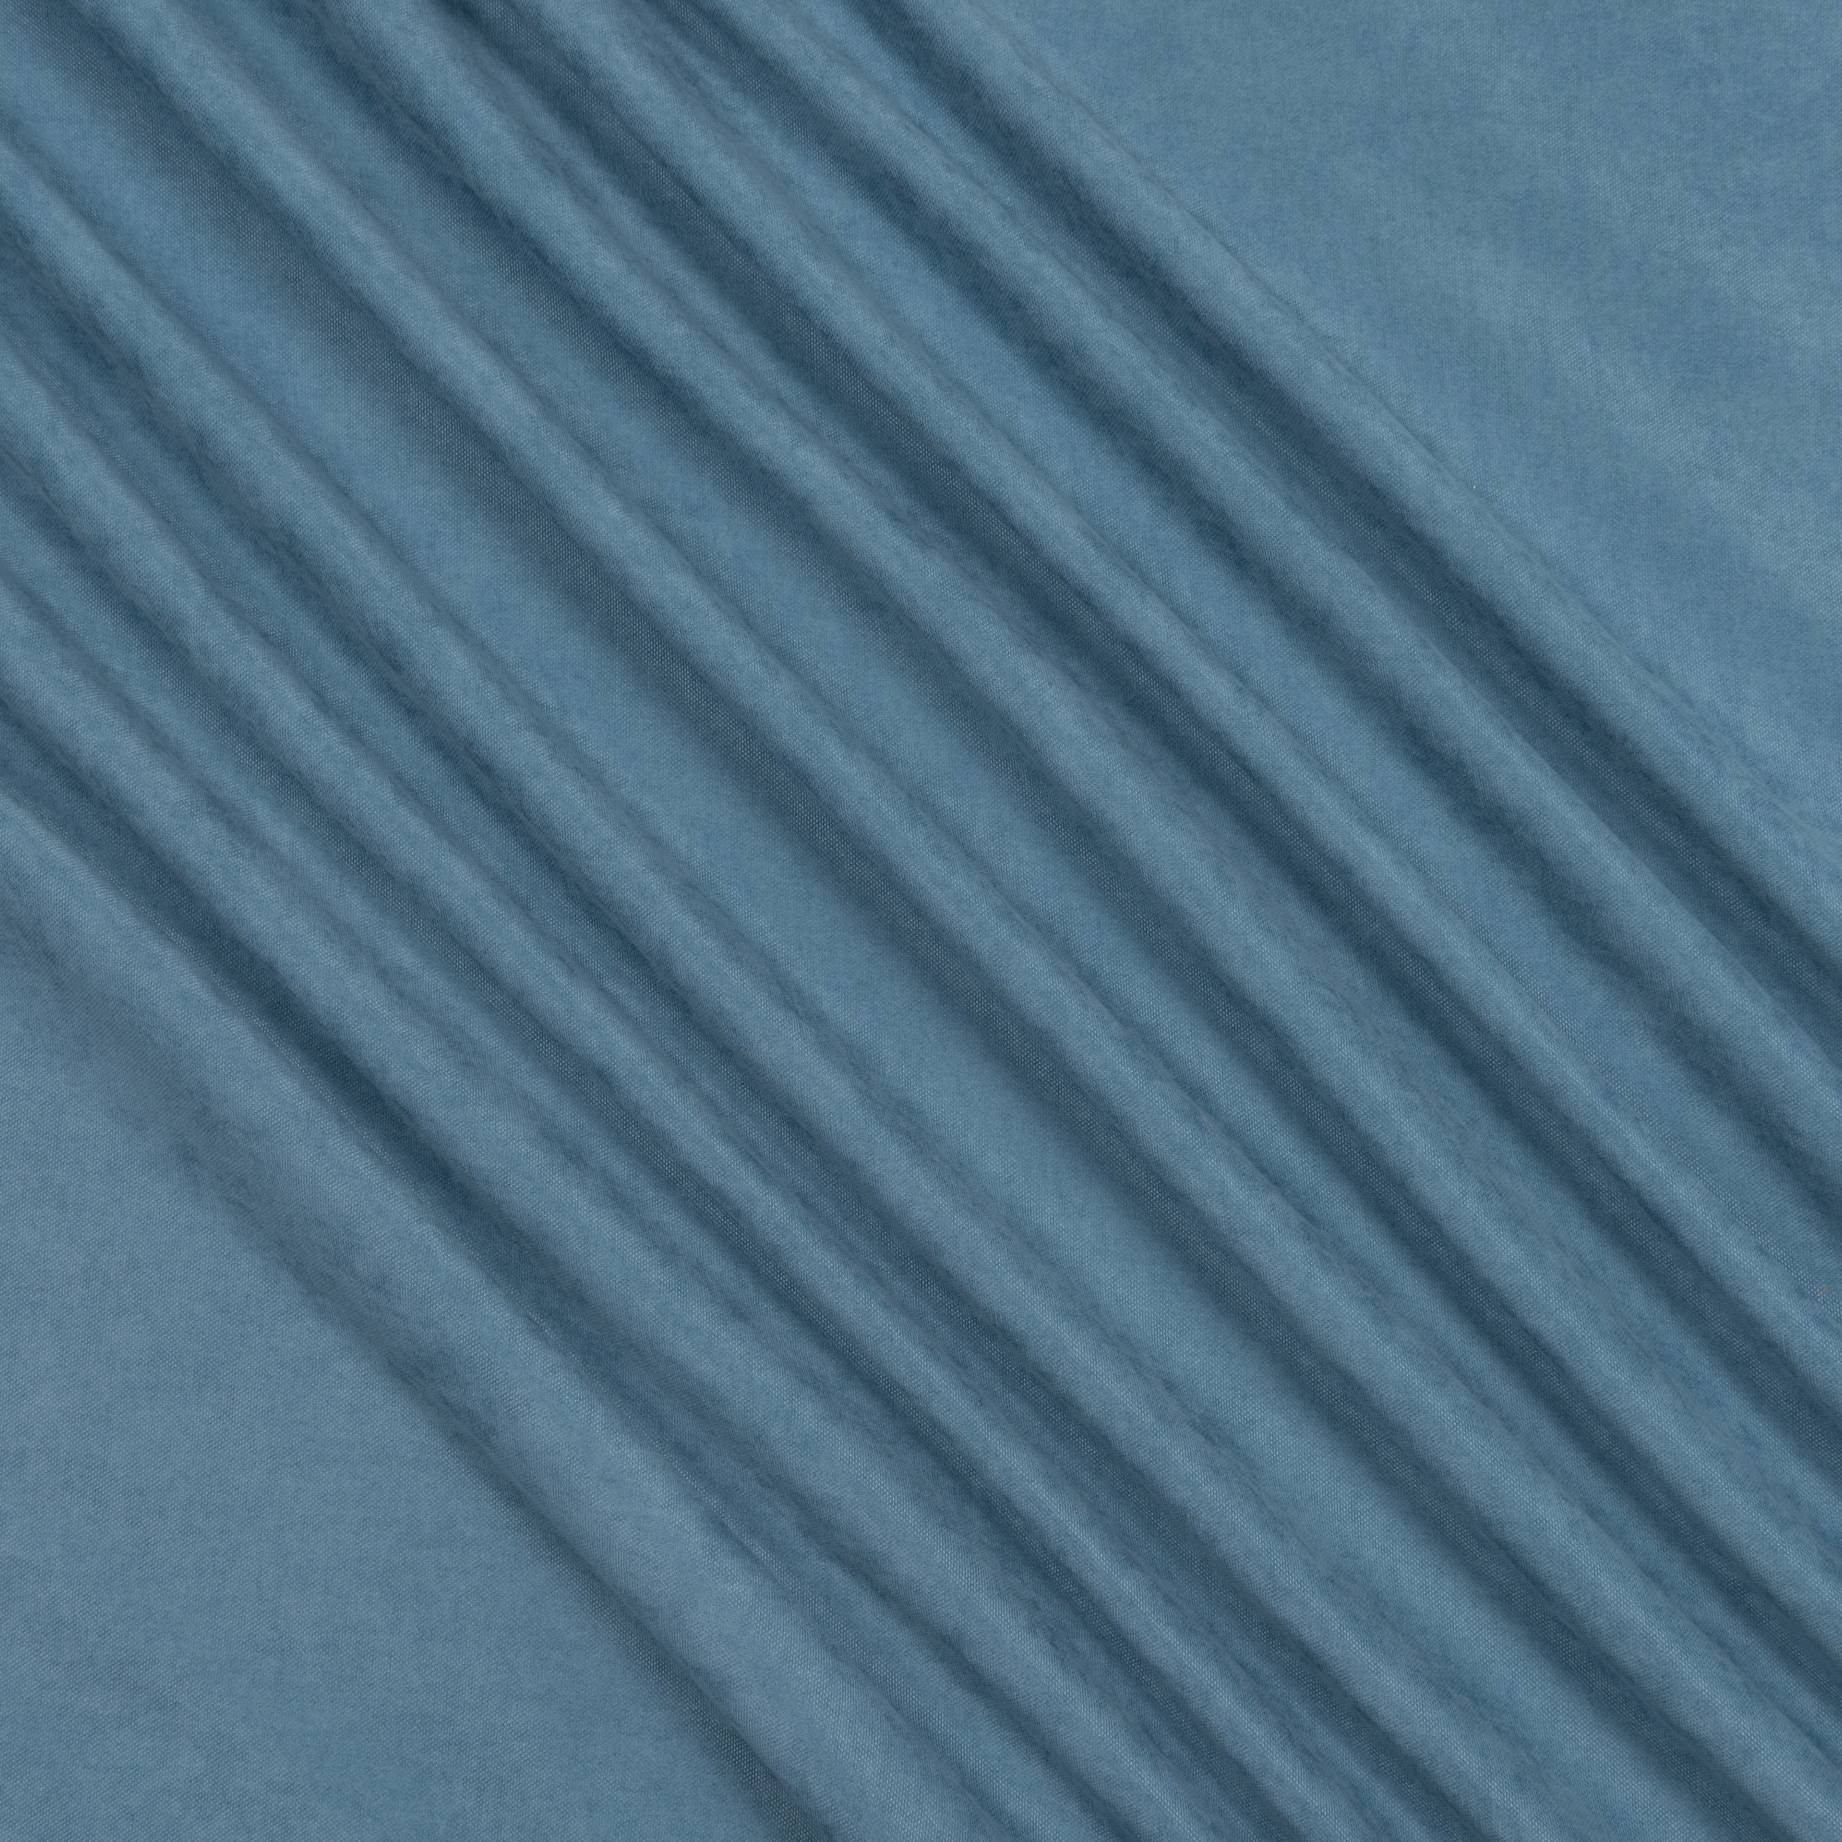 Декоративный нубук, Арвин 2, Канвас Даймонд, серо-голубой, полиэстер 100%, 205 г/м2, 50х30 см